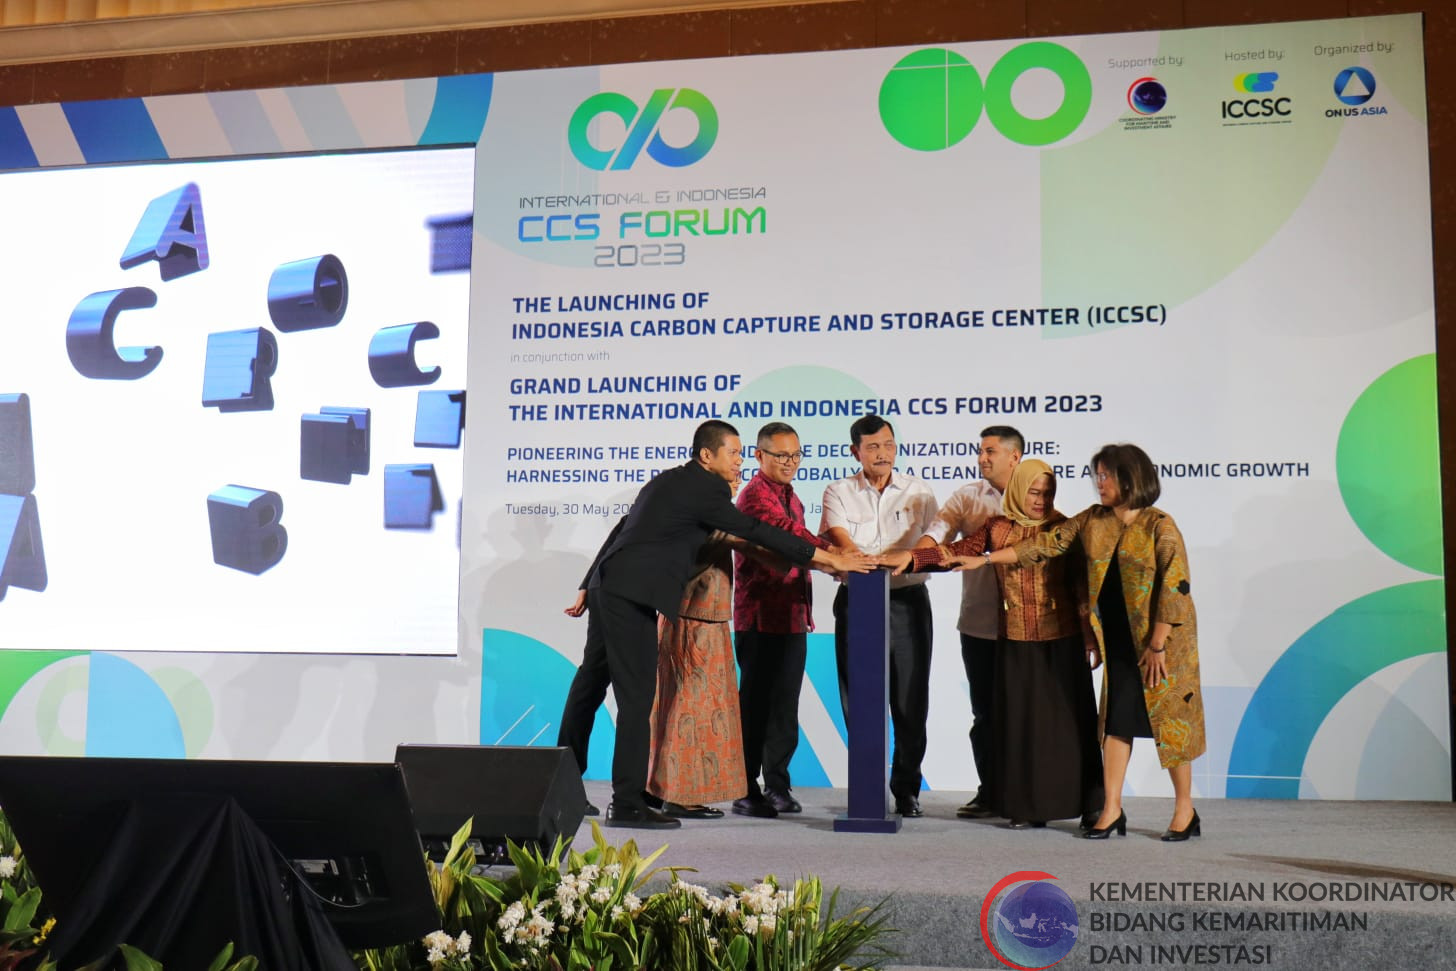 Pemerintah Indonesia Mendorong Inovasi dan Kerjasama dalam Penerapan CCS